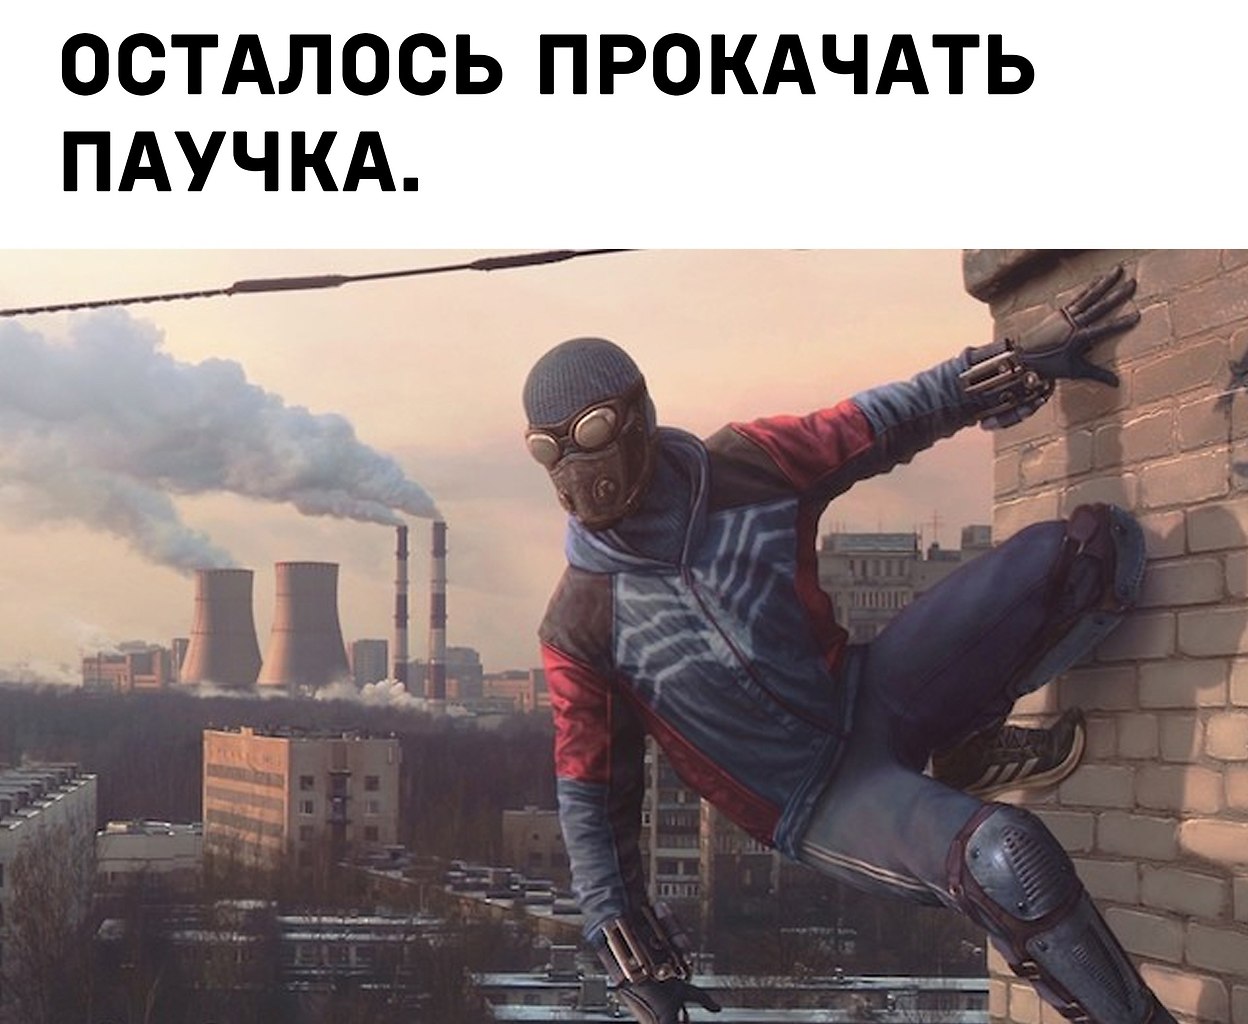 Художник Евгений Зубков Северный паук